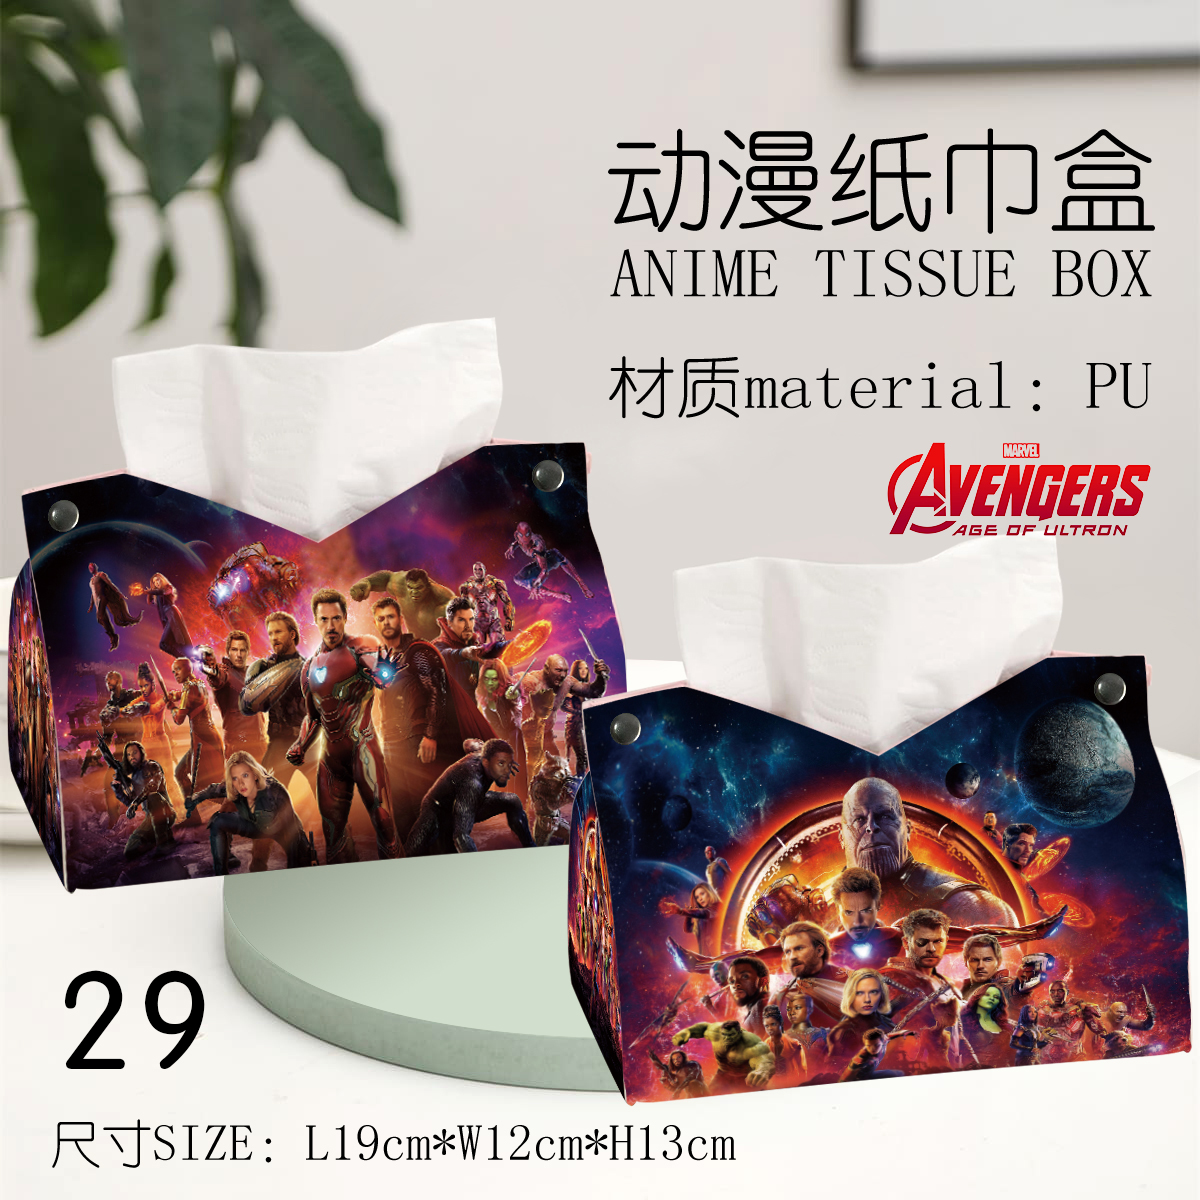 Avengers anime Tissue box